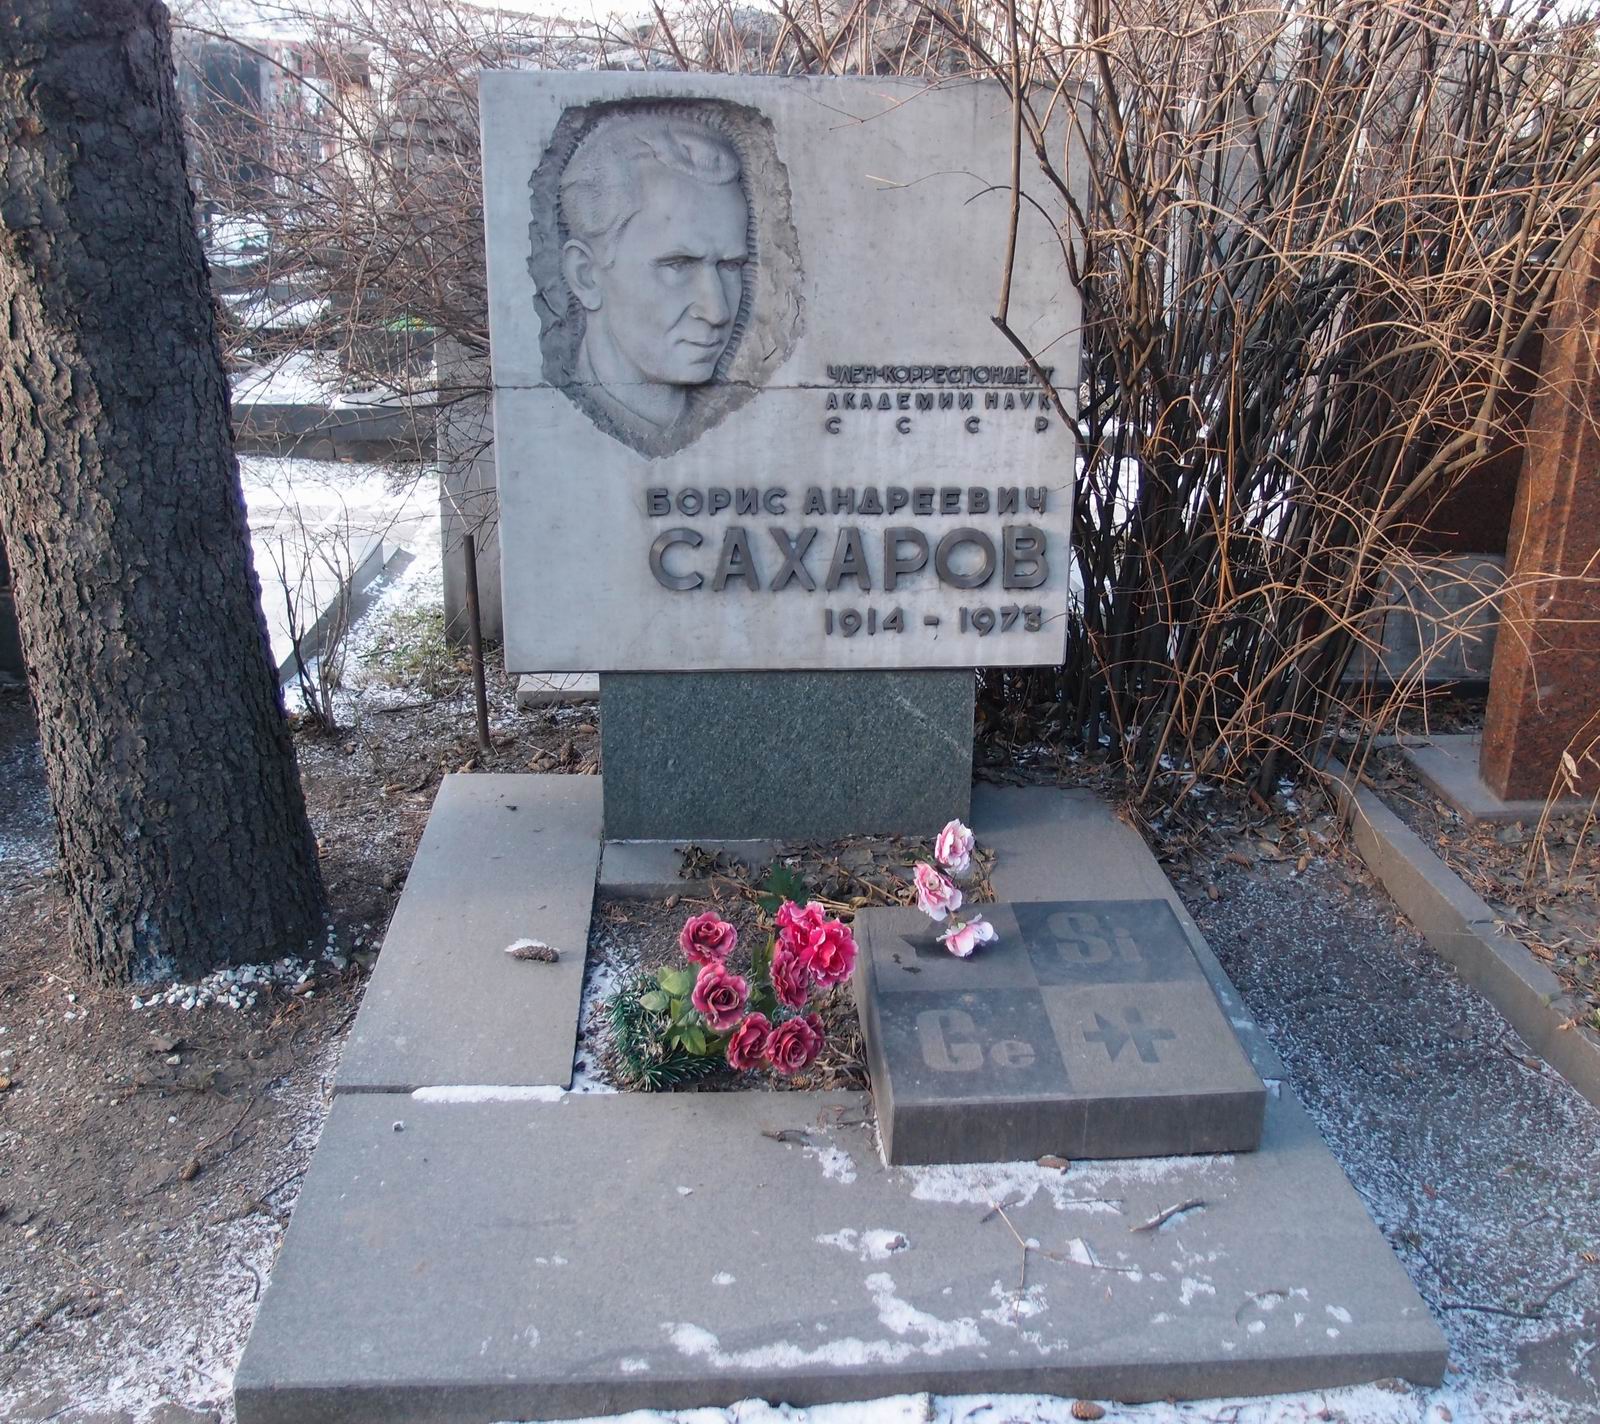 Памятник на могиле Сахарова Б.А. (1914-1973), ск. В.Матросов, арх. В.Климов, на Новодевичьем кладбище (7-5-20).